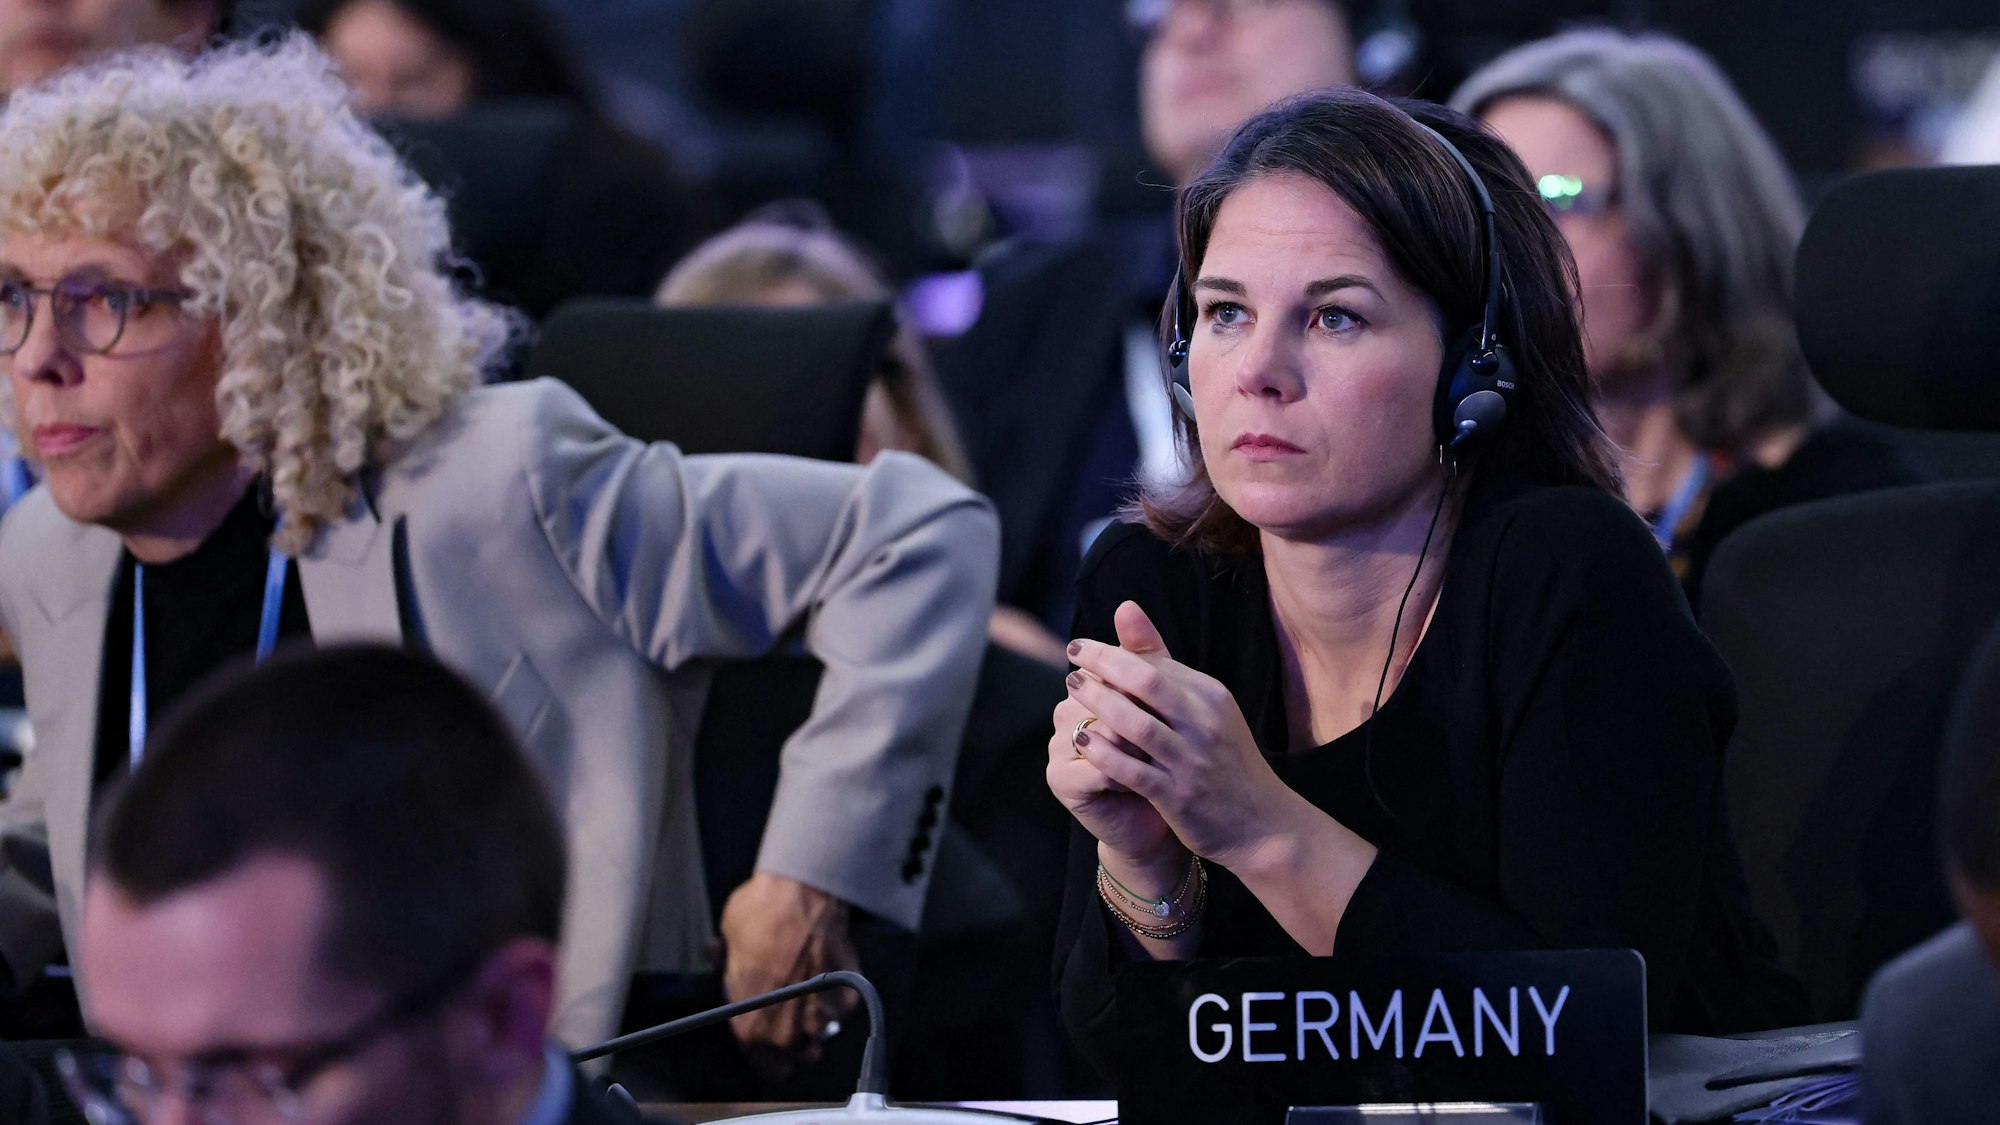 Bundesaußenministerin Annalena Baerbock (Grüne) schaut skeptisch und hat in einem Konferenzsaal Kopfhörer auf. Vor ihr steht ein Schild, auf dem „Germany“ steht.